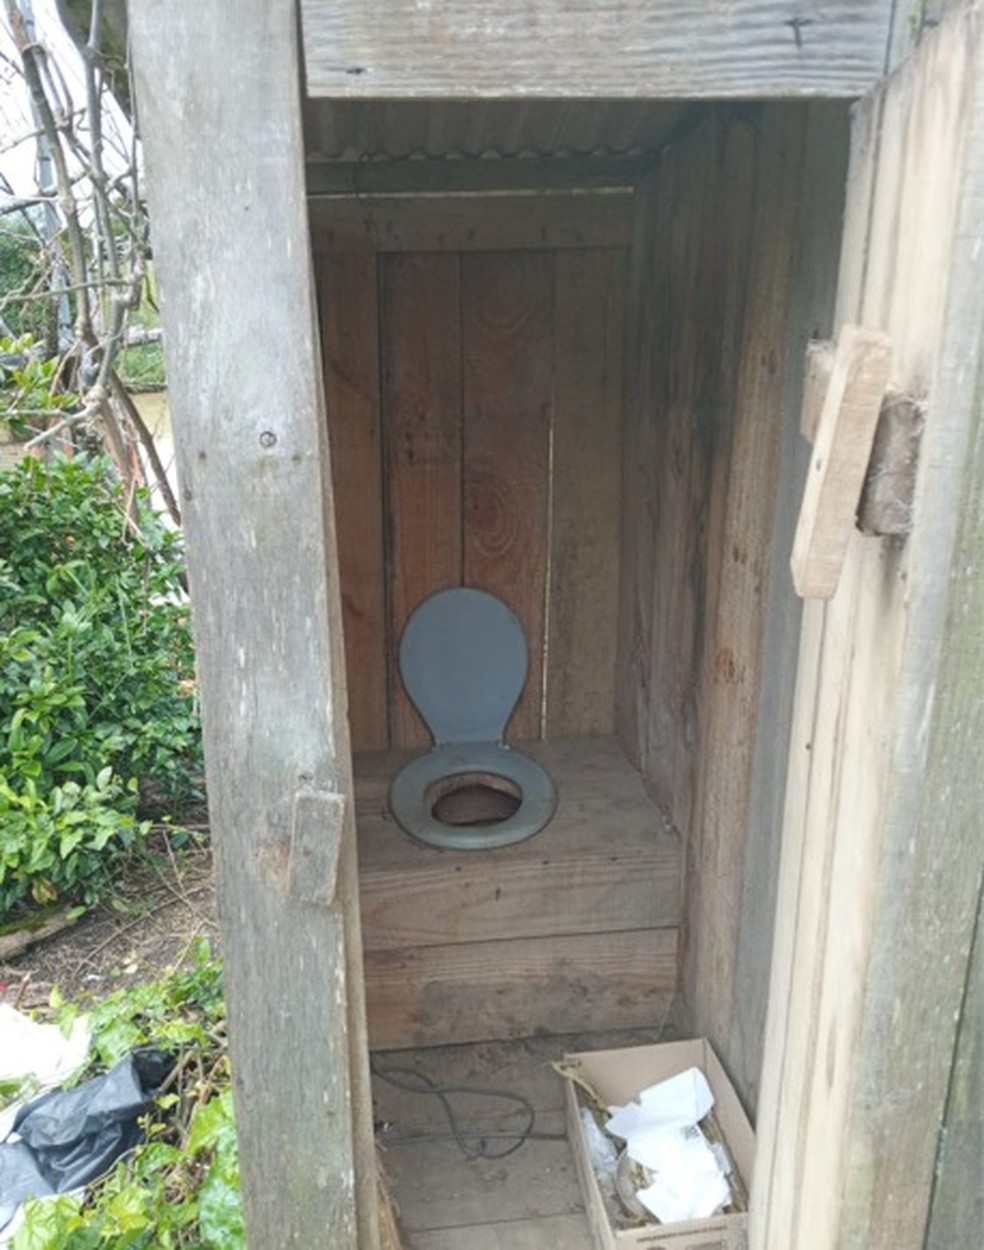 Banheiro disponibilizado aos trabalhadores — Foto: GEFM/Divulgação